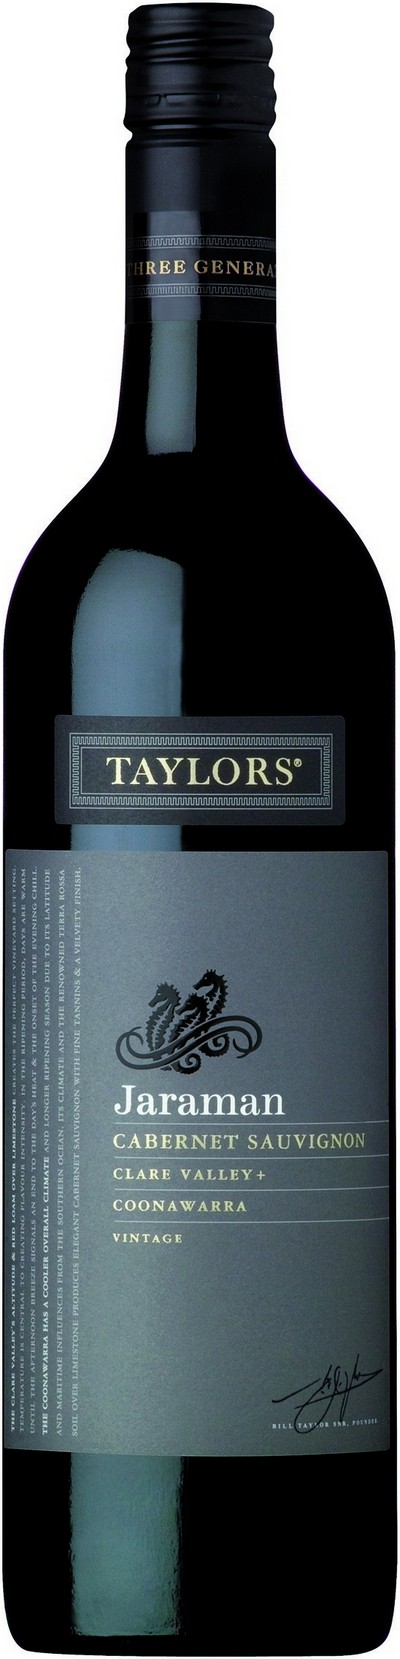 taylors-jaraman-cabernet-sauvignon-2014